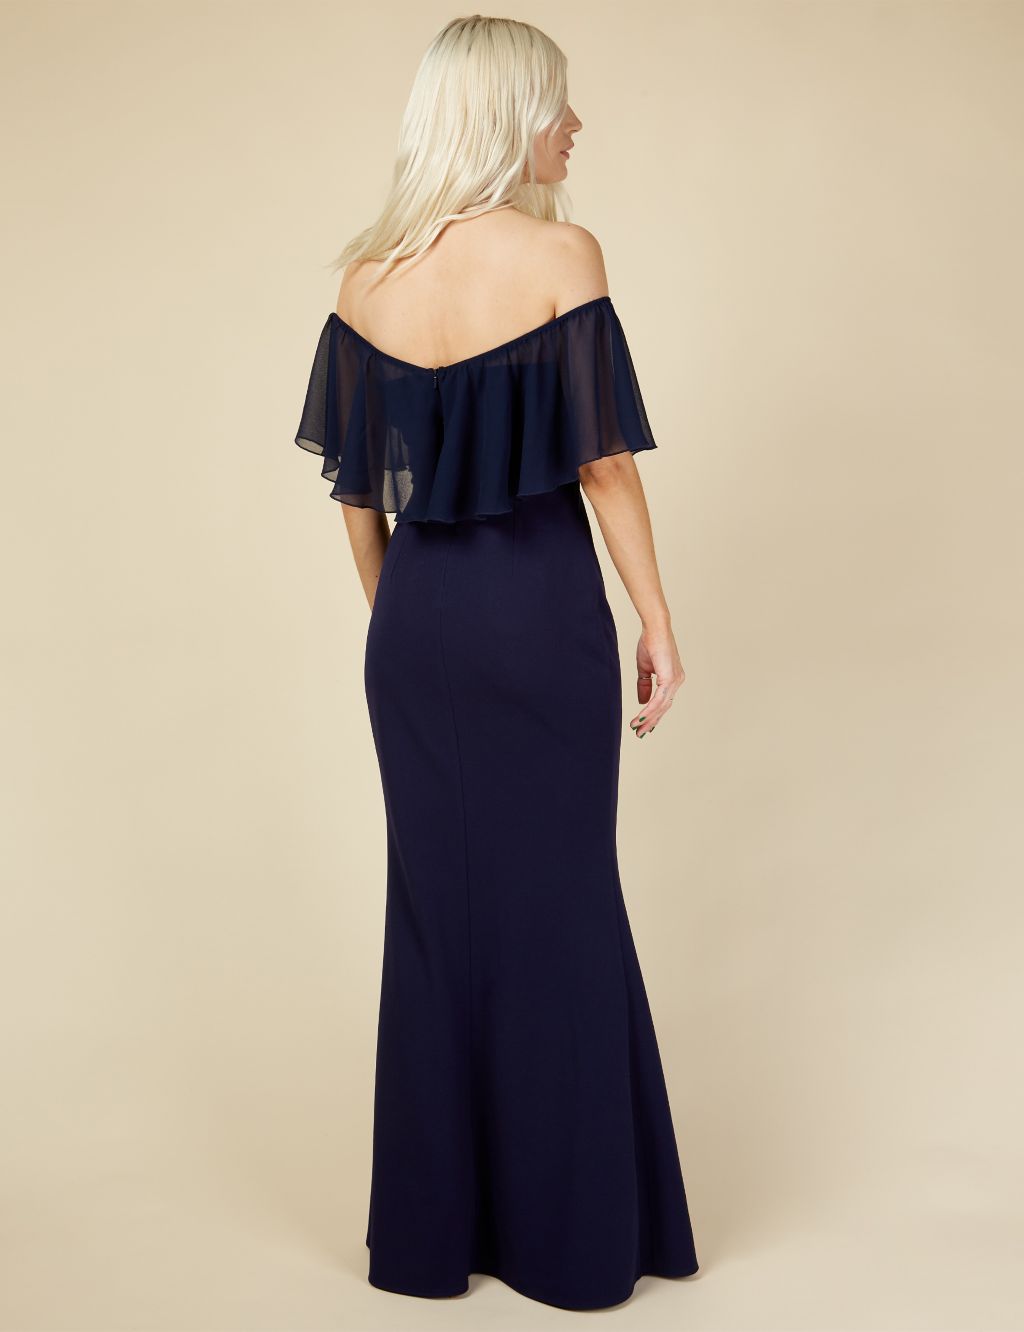 Bardot Frill Sleeve Maxi Dress image 4